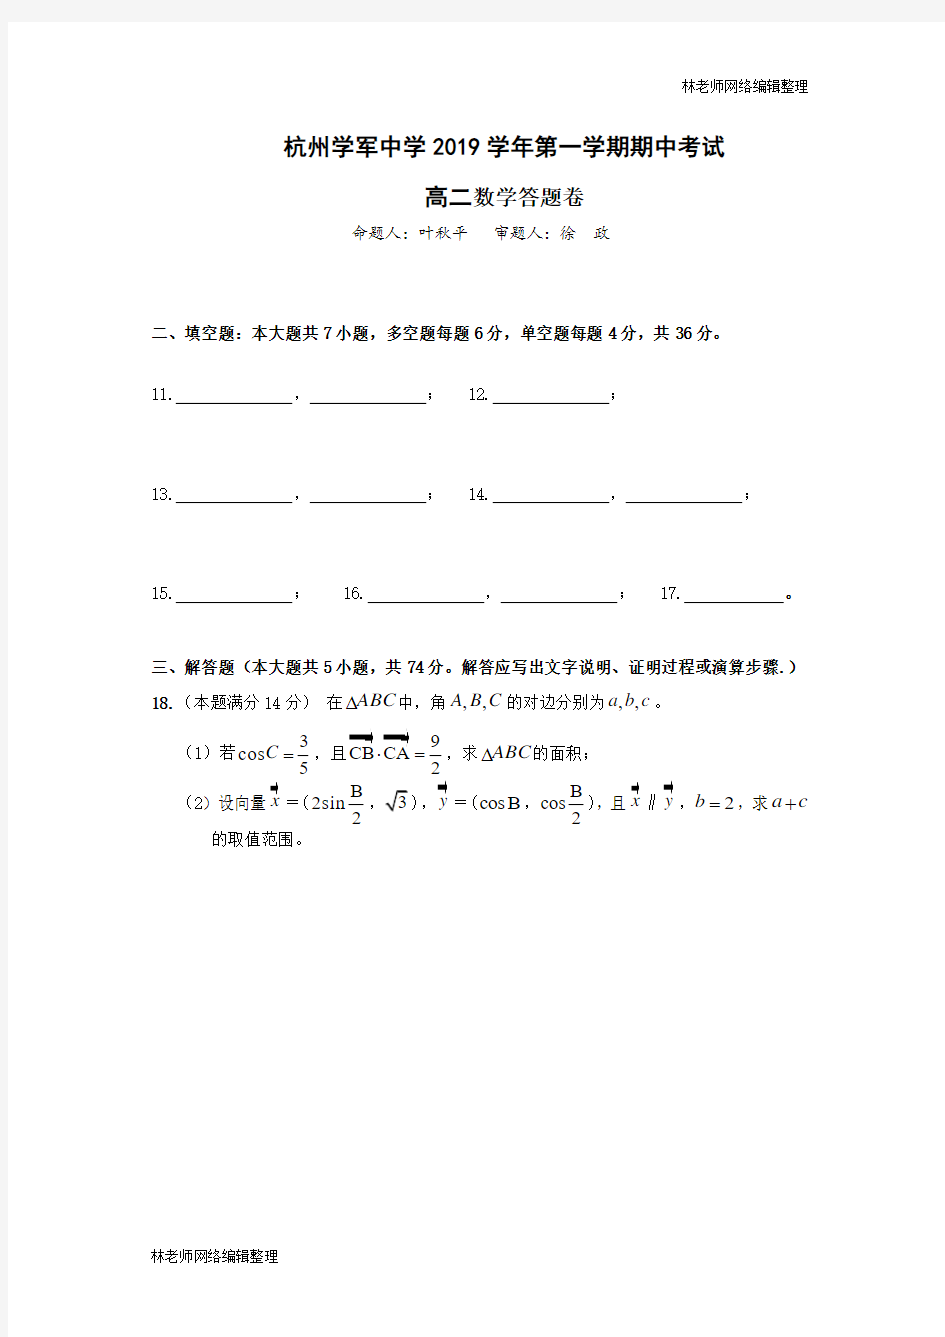 杭州学军中学(西溪校区)2019学年第一学期期中考试高二数学答题卷